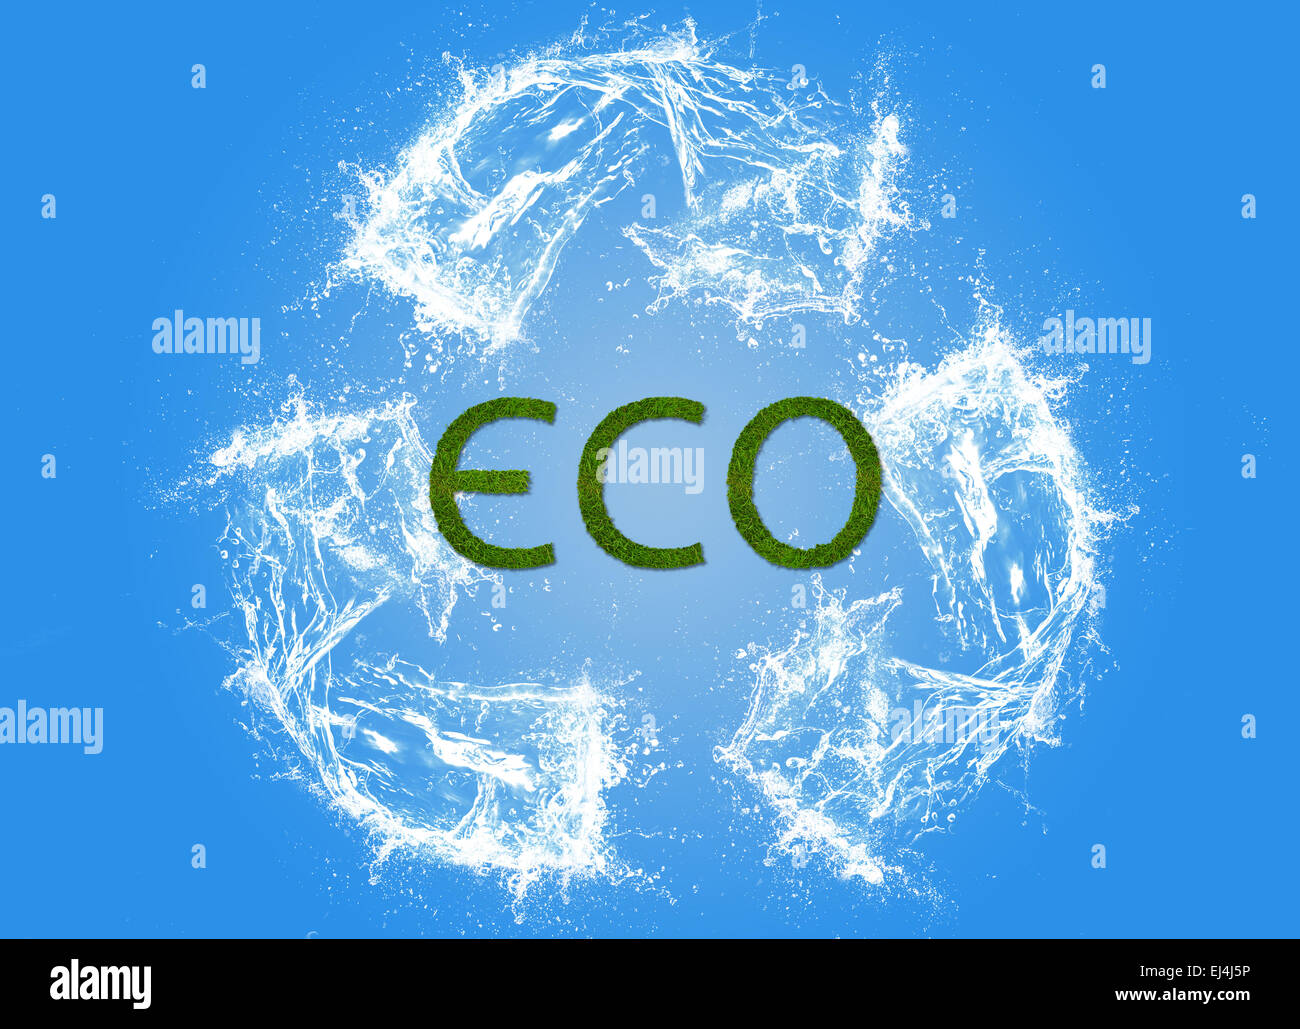 Signo ecológico, la contaminación, ecológico, eco friendly, arte digital Foto de stock